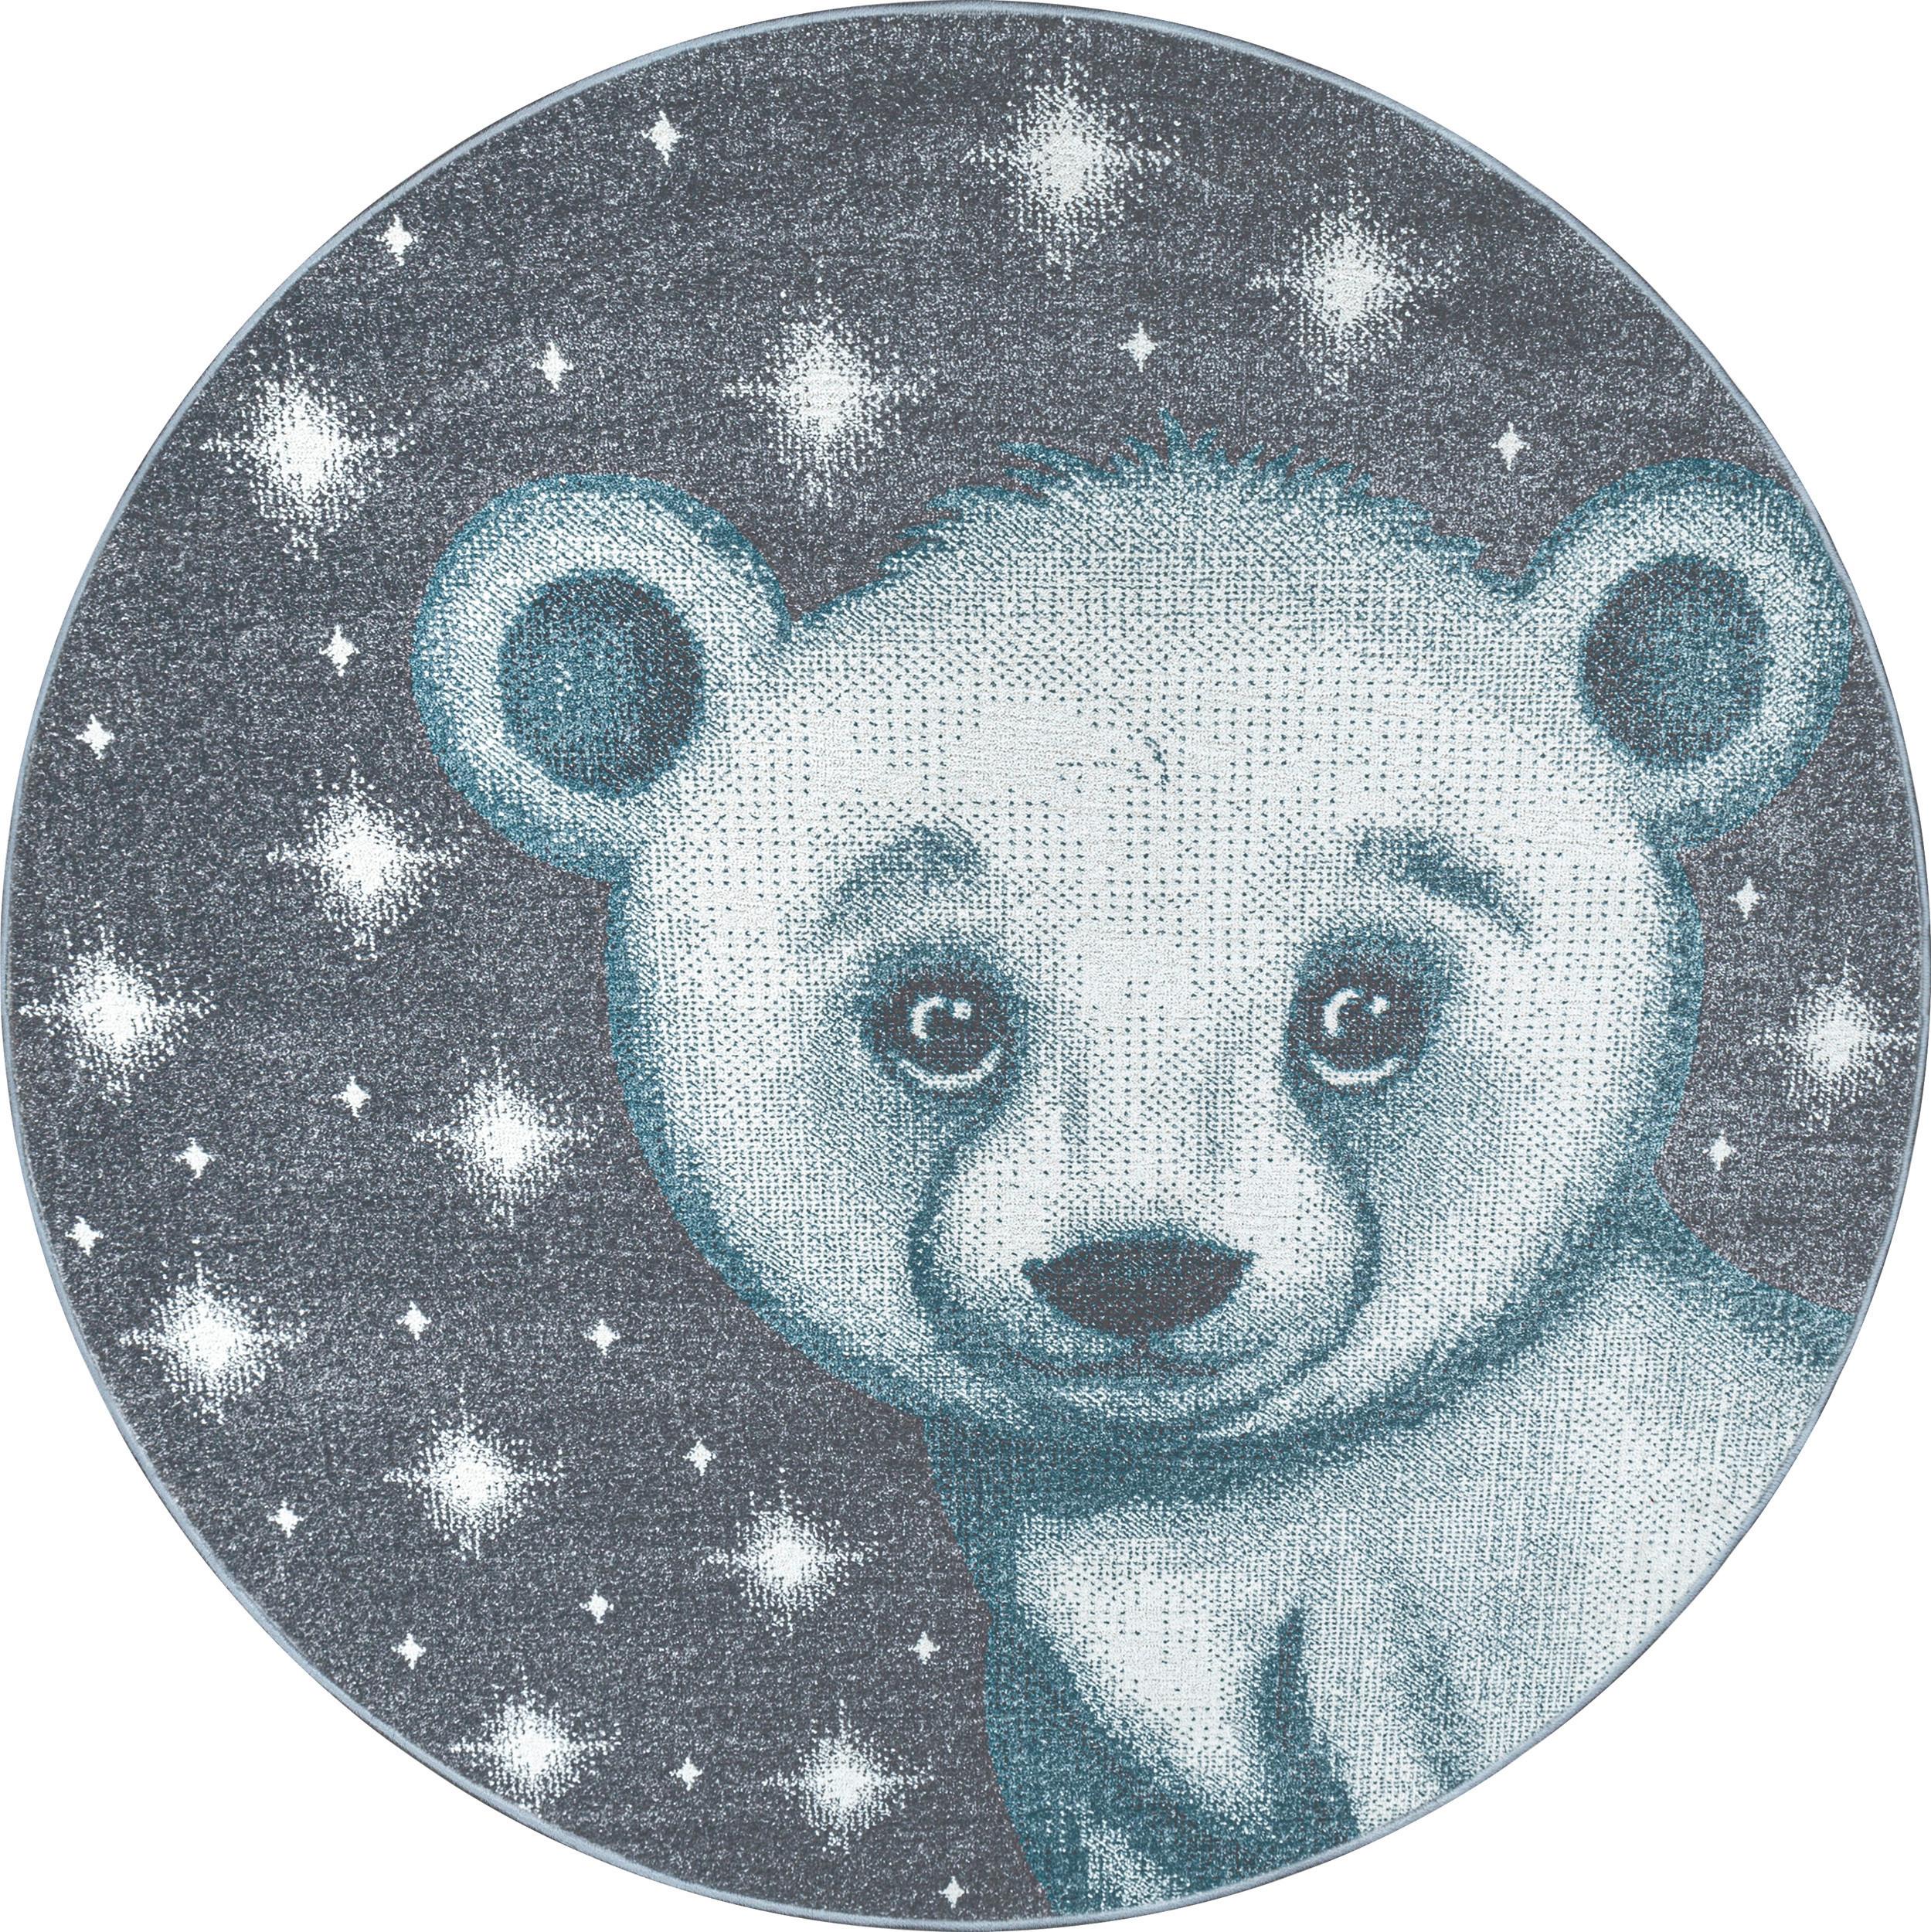 Detský Koberec Medveď 160cm - modrá, Trend, textil (160cm) - Ben'n'jen